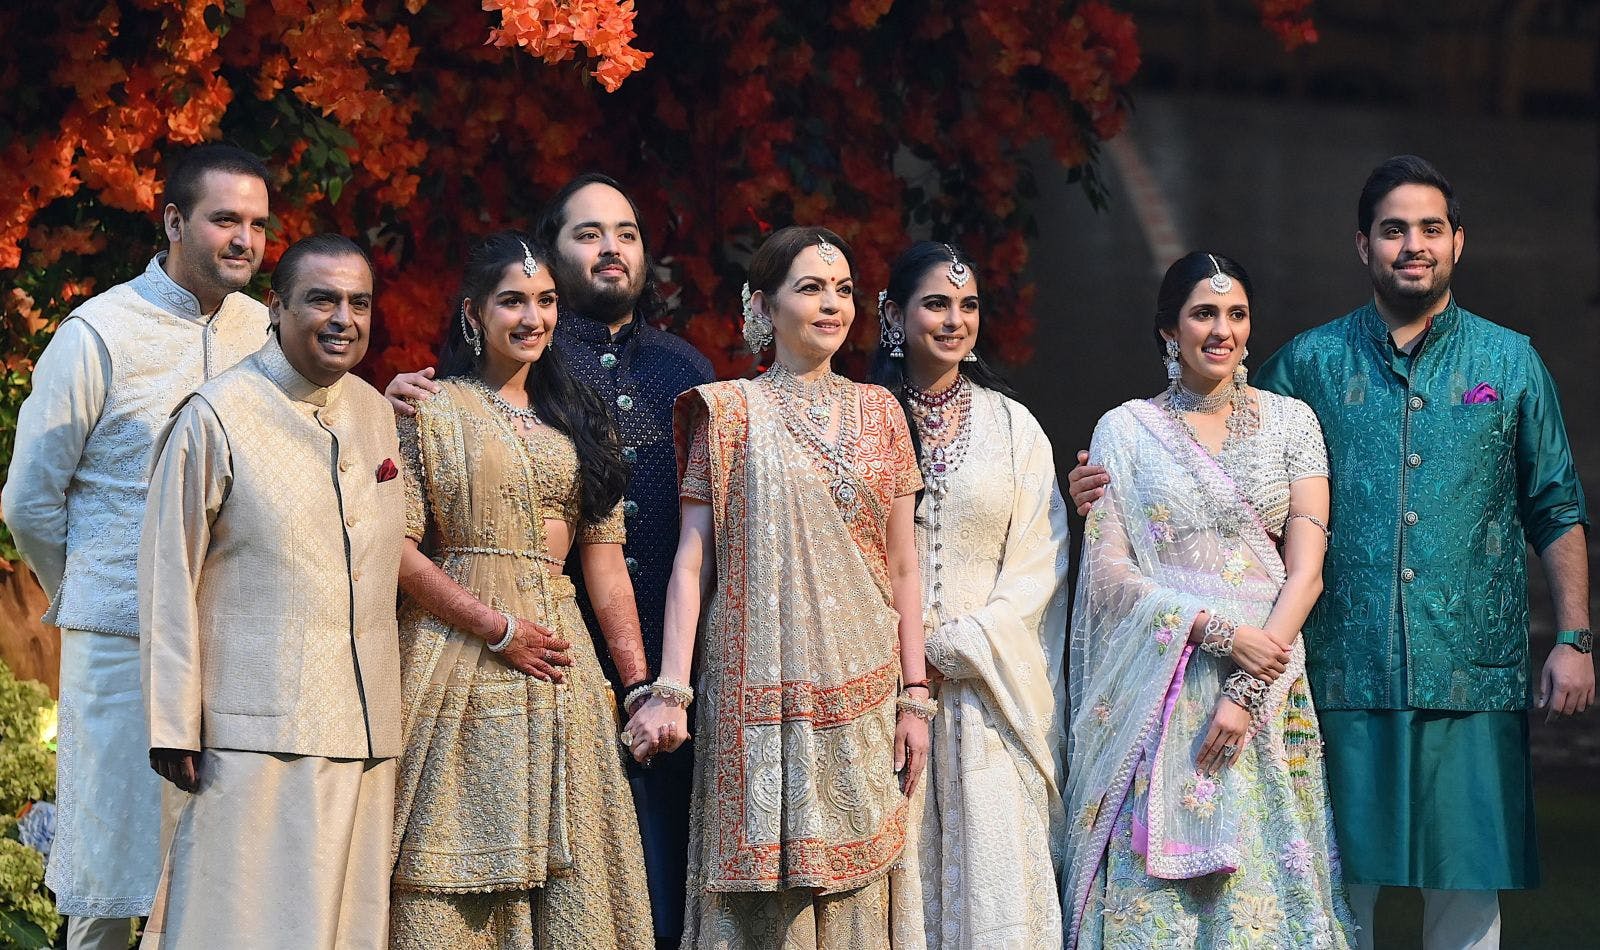 Anand Parimal, Mukesh Ambani, Nita Ambani, Radhika Merchant, Anant Ambani, Isha Ambani, Shloka Mehta, and Akash Ambani (from left to right) during Anant’s engagement in Mumbai on January 19, 2023 (Sujit JAISWAL / AFP / Getty Images)